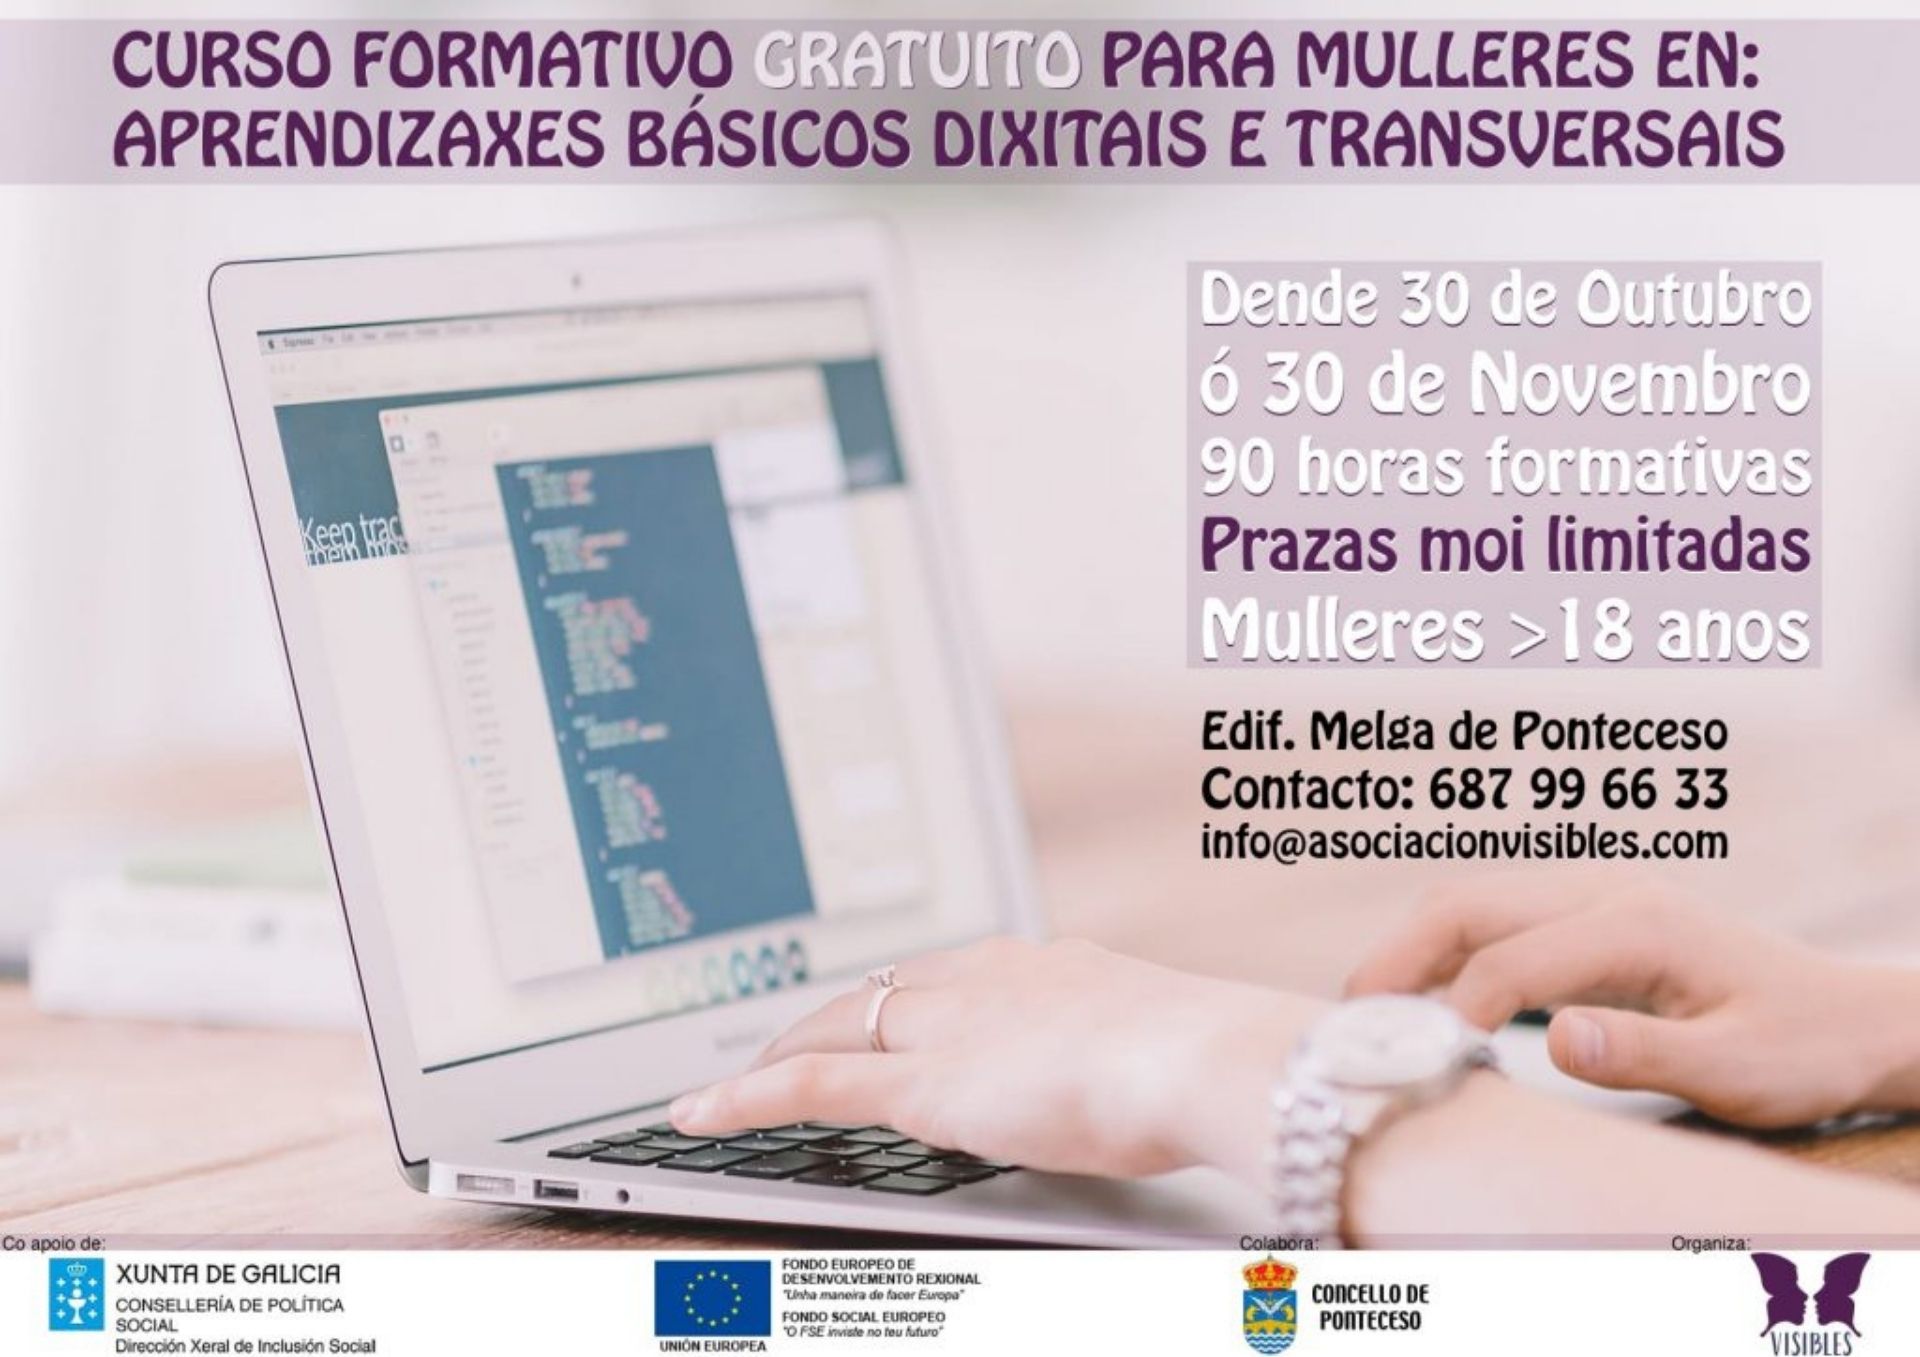 CURSO FORMATIVO EN PONTECESO: Aprendizaxes básicos dixitais e transversais.